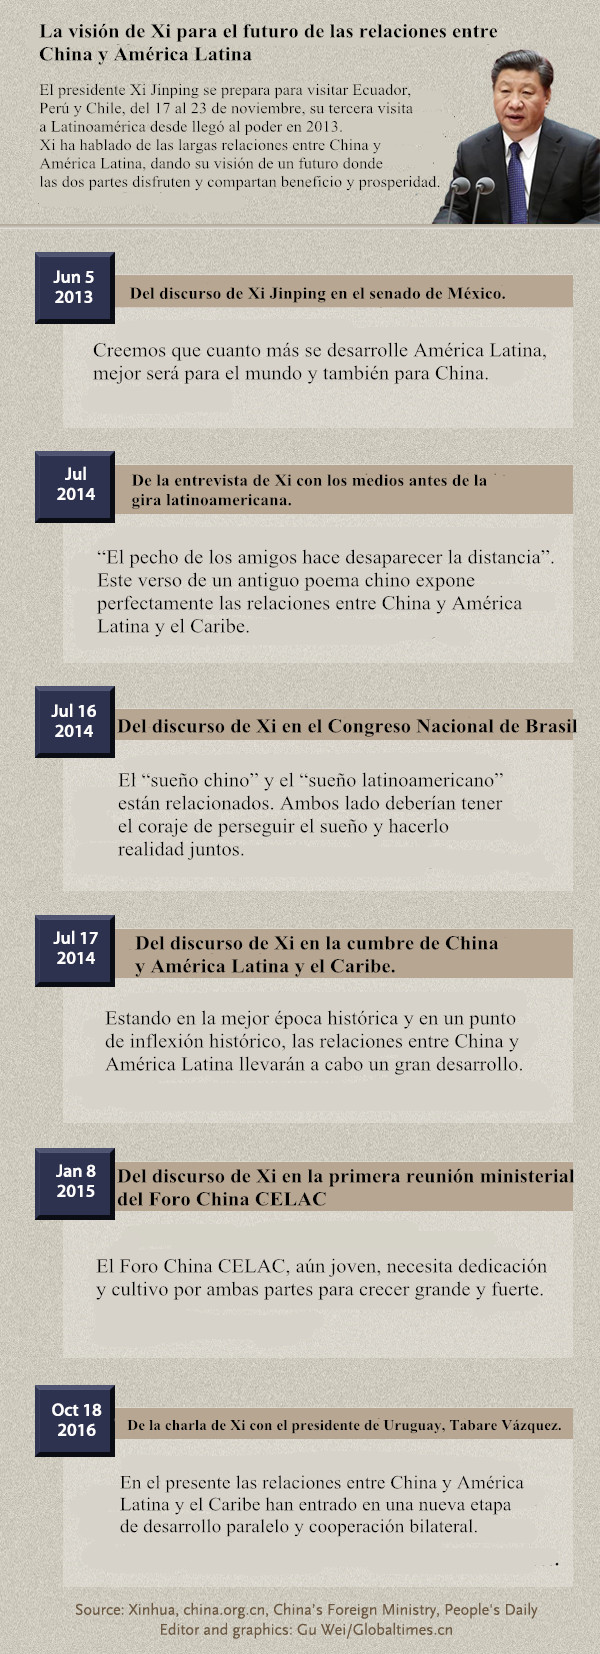 La visión de Xi para el futuro de las relaciones entre China y América Latina